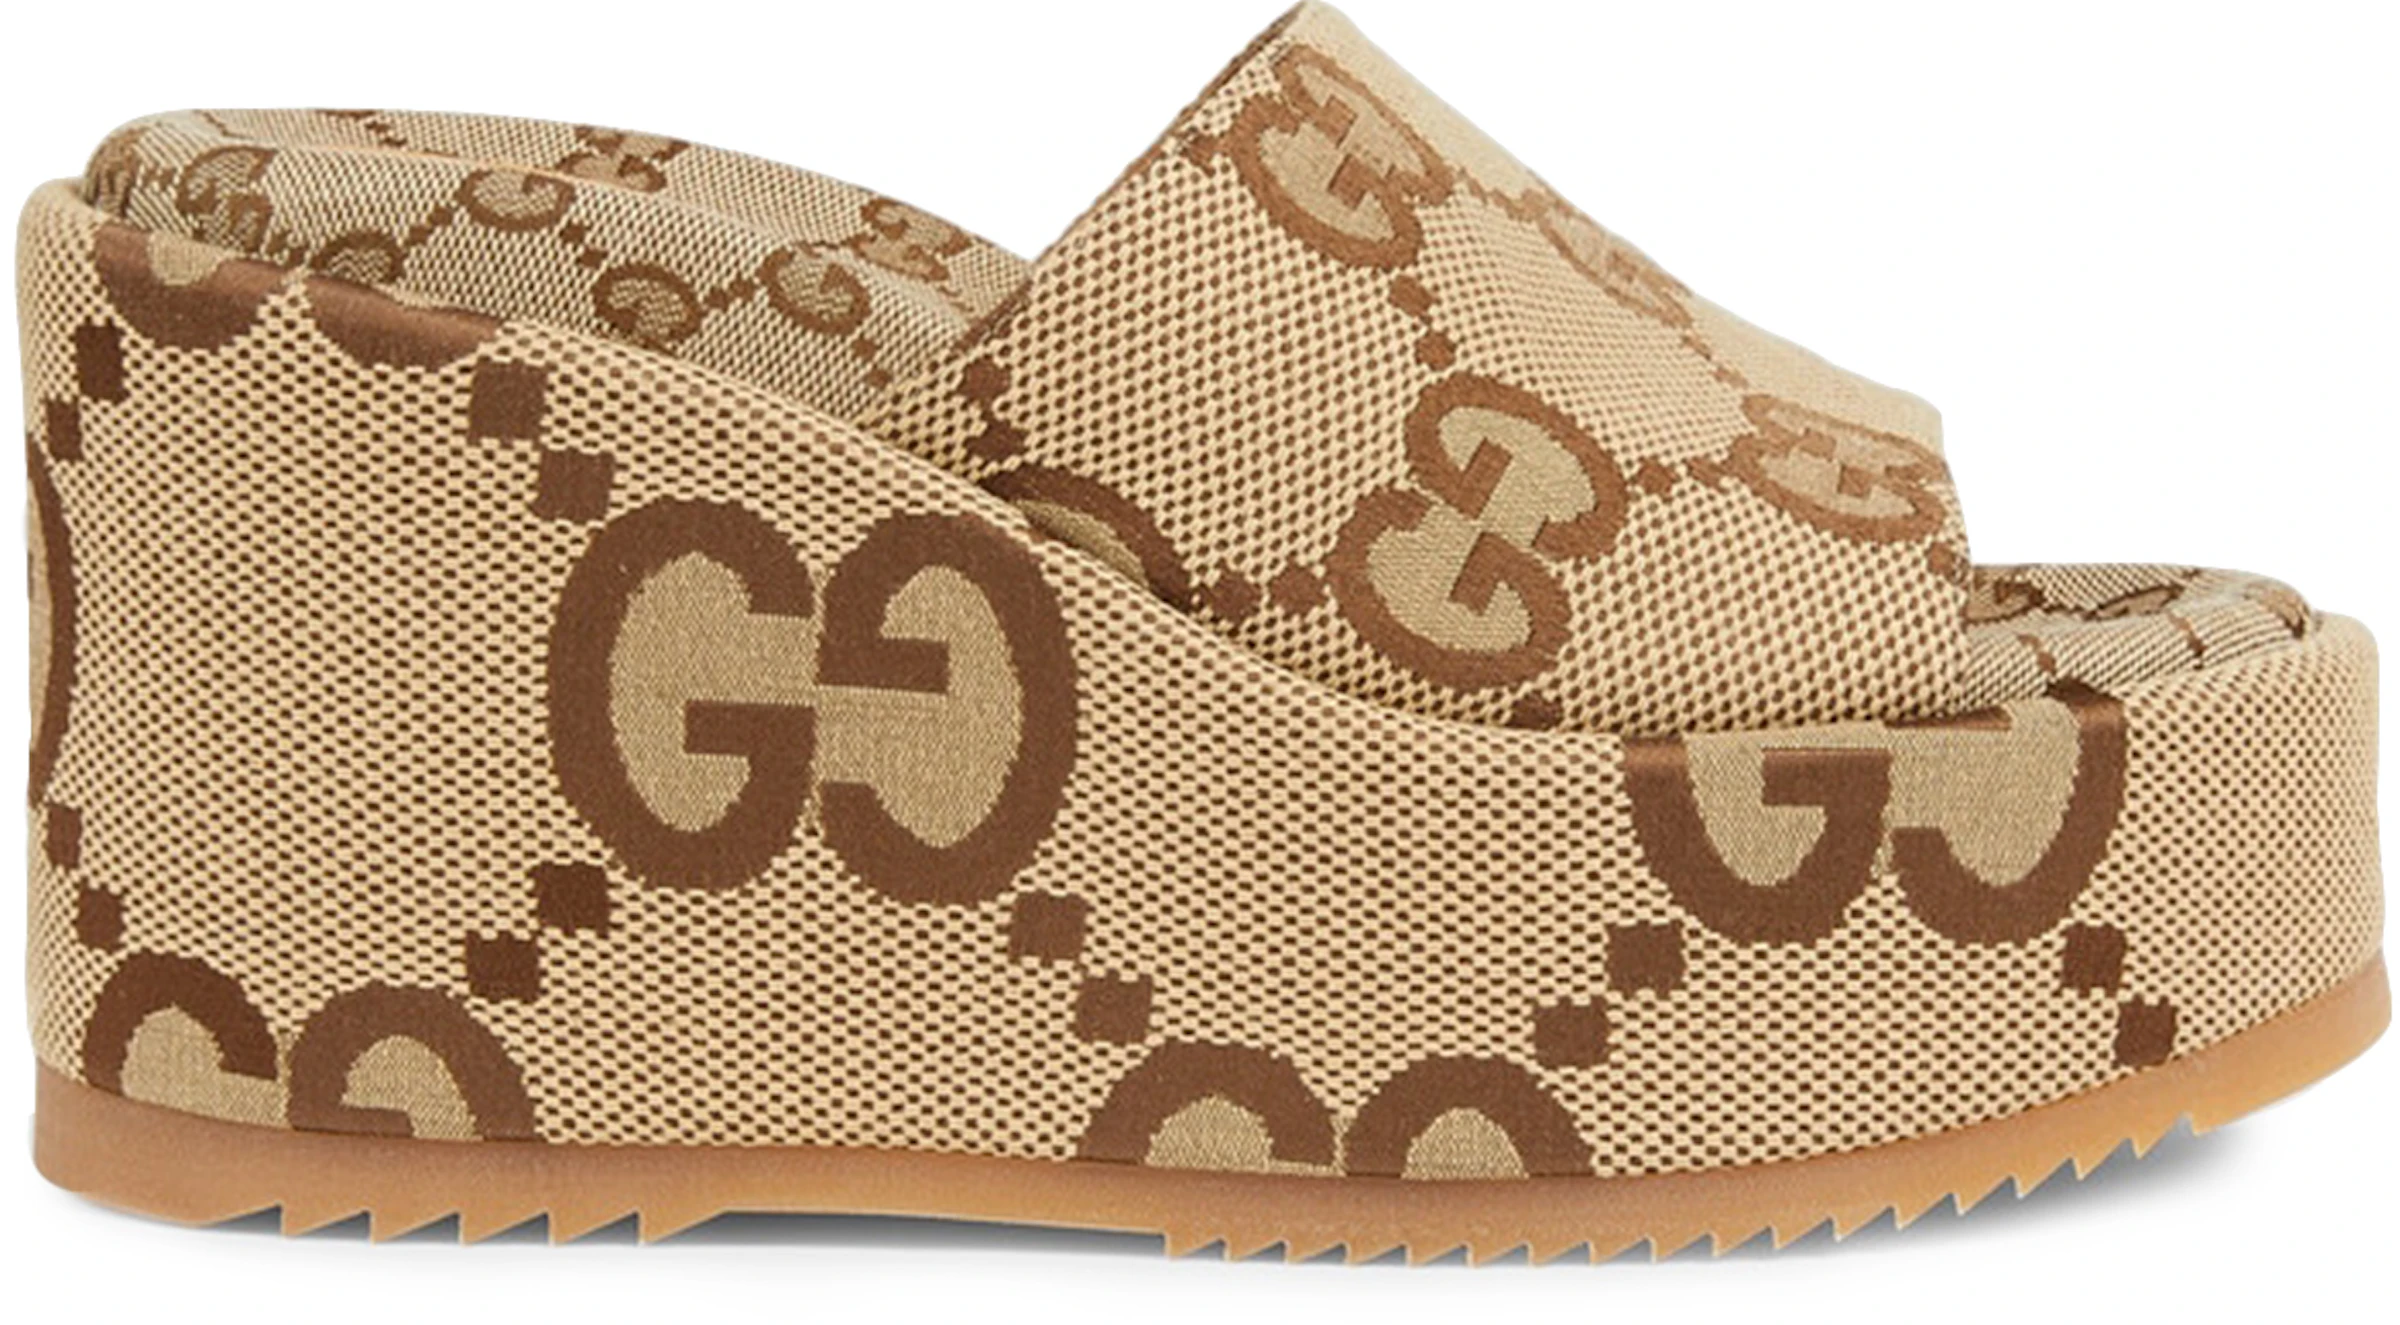 Gucci 105mm Platform Slide Sandal Beige GG Canvas - 674761 UKO00 2580 - US